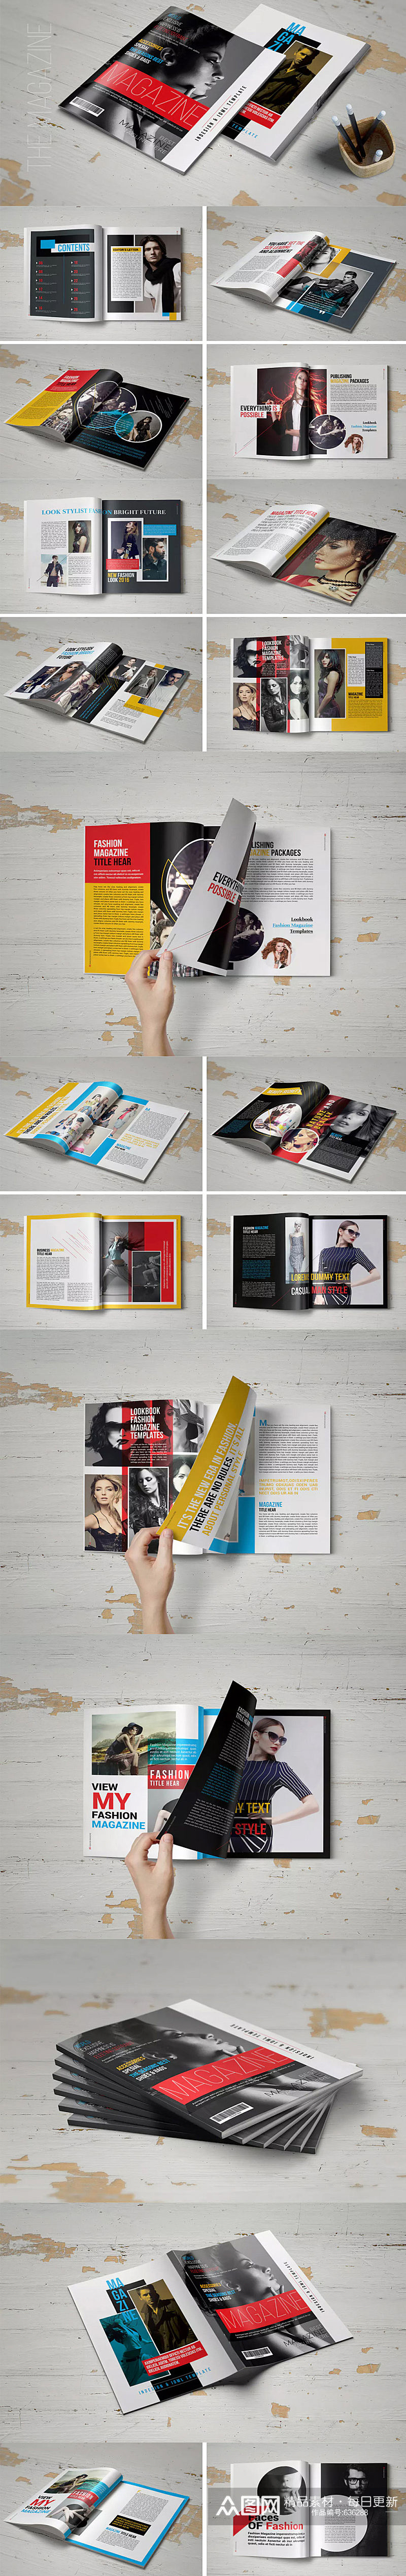 红黑大气企业画册人物画册设计 书籍目录设计素材